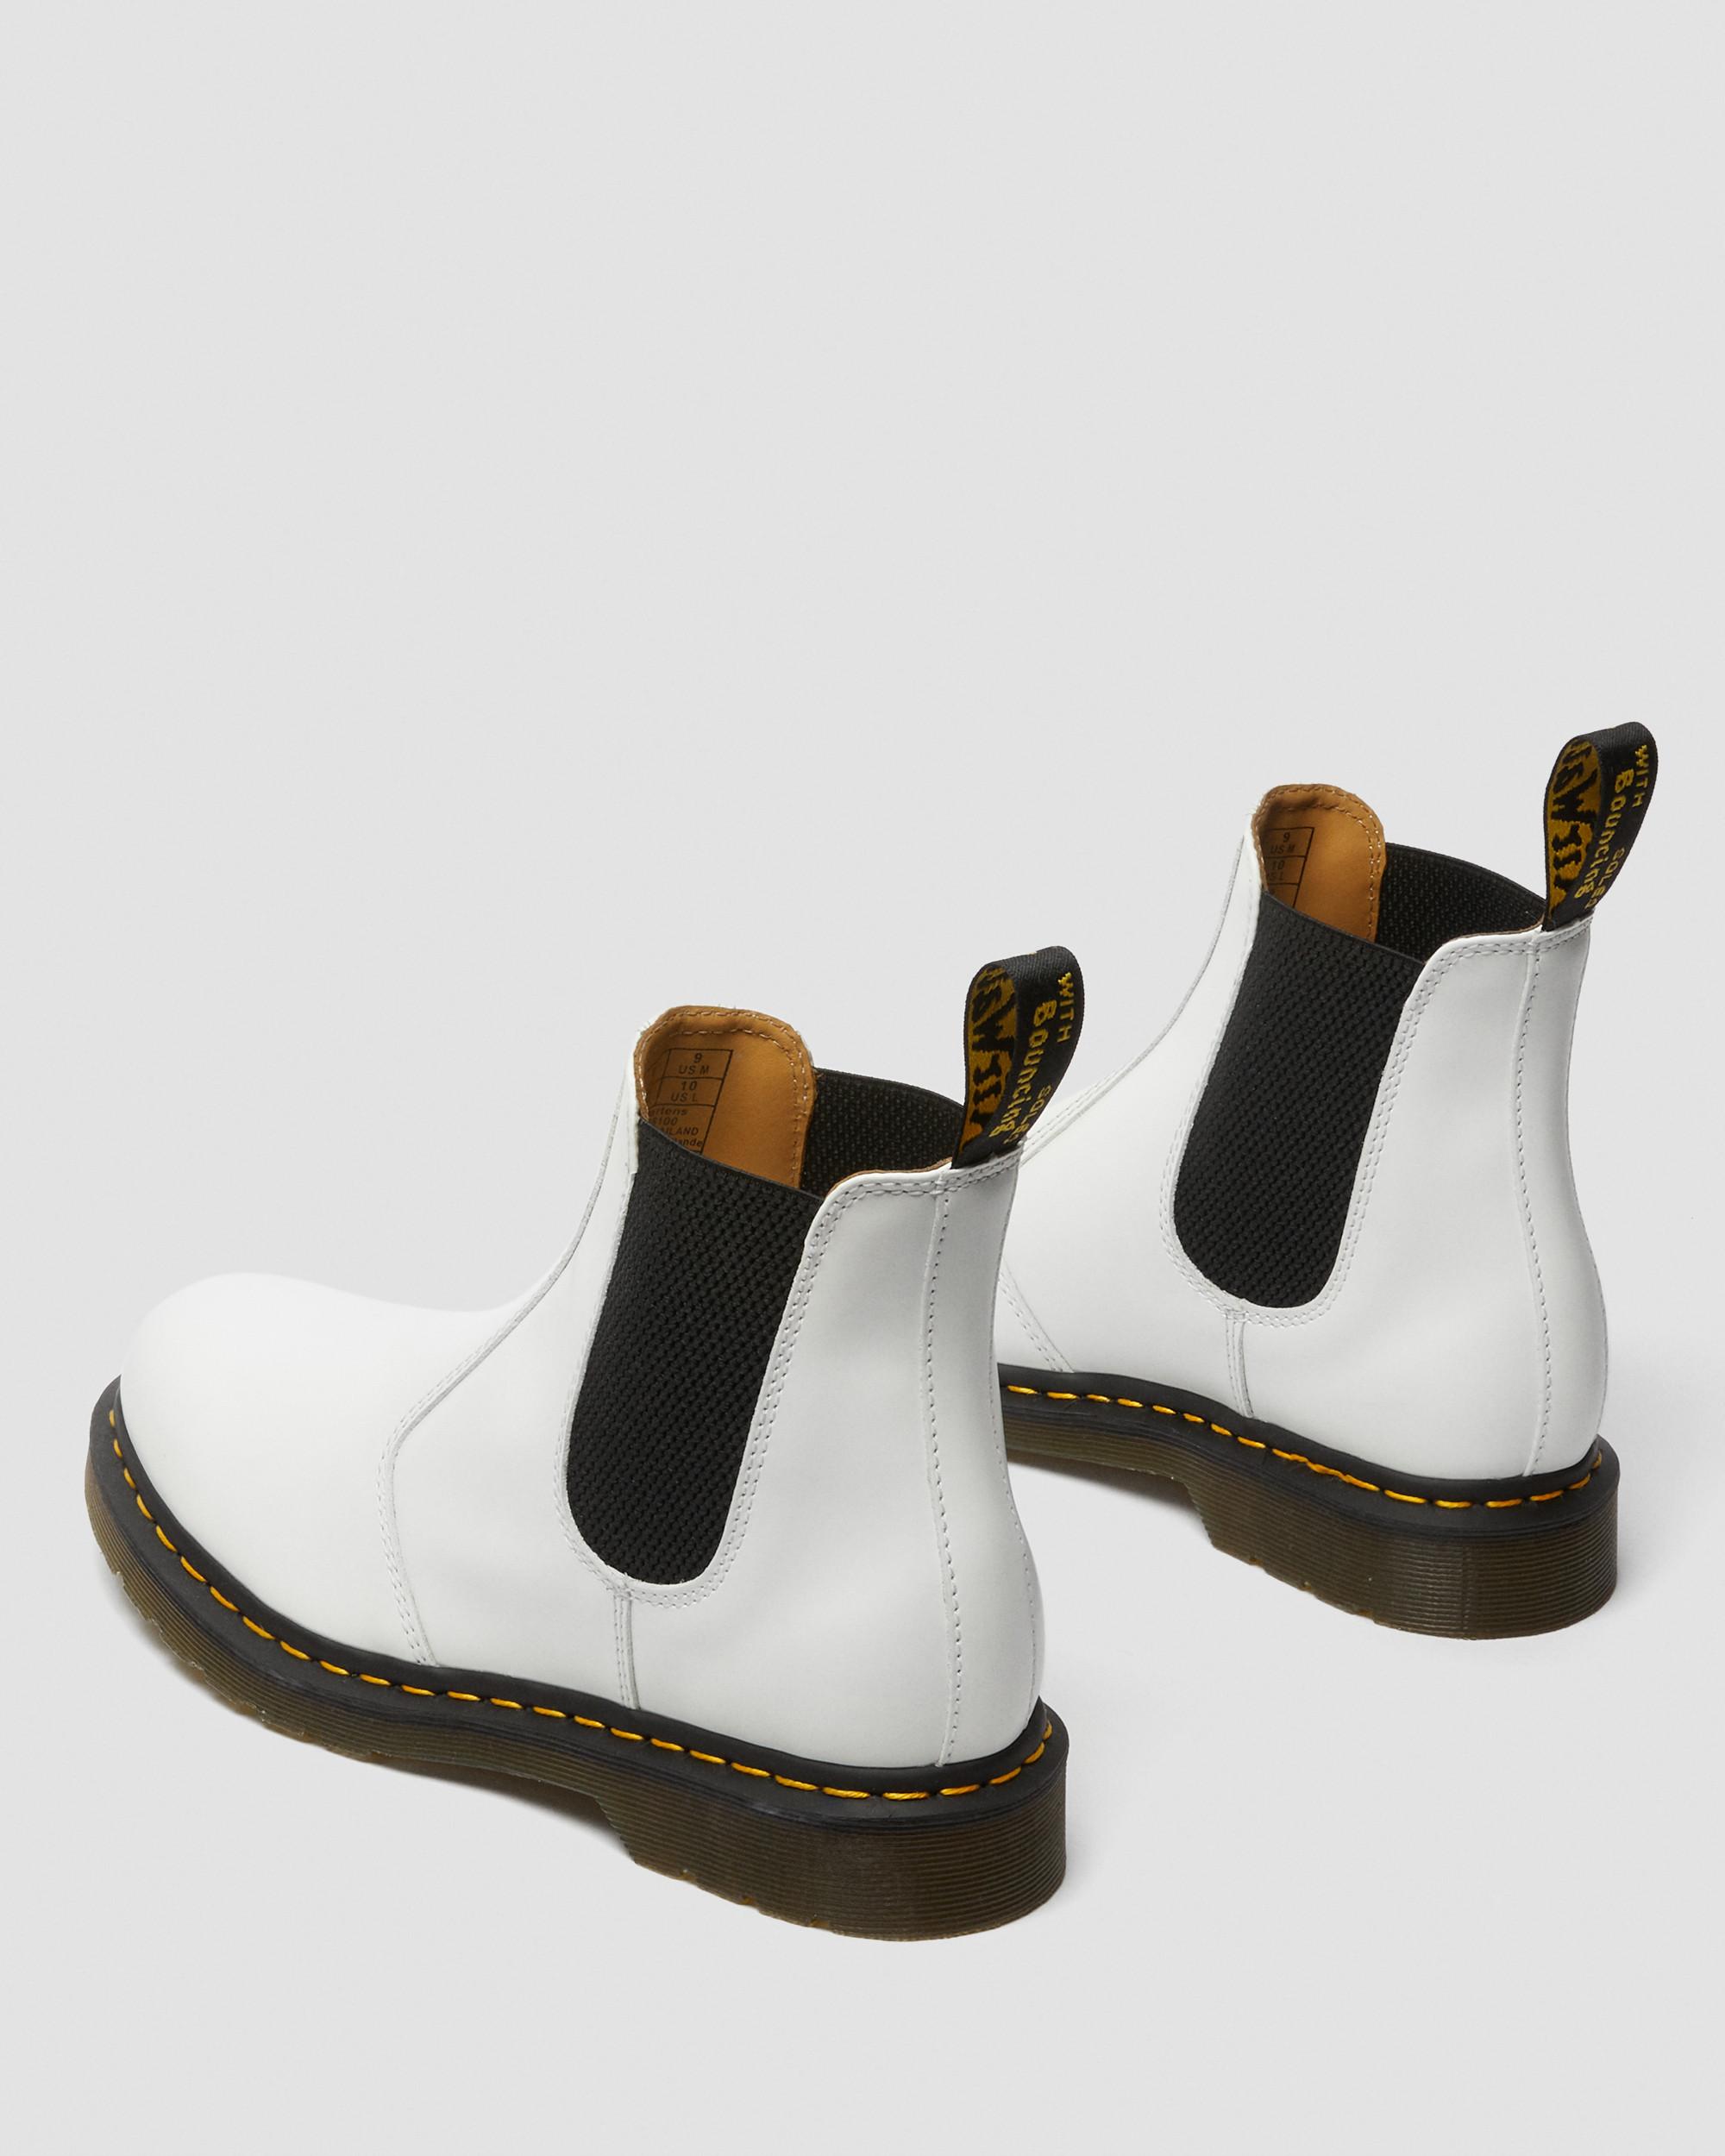 2976 Smooth Leather Chelsea Boots2976 Chelsea-støvler i Smooth læder med gul syning Dr. Martens